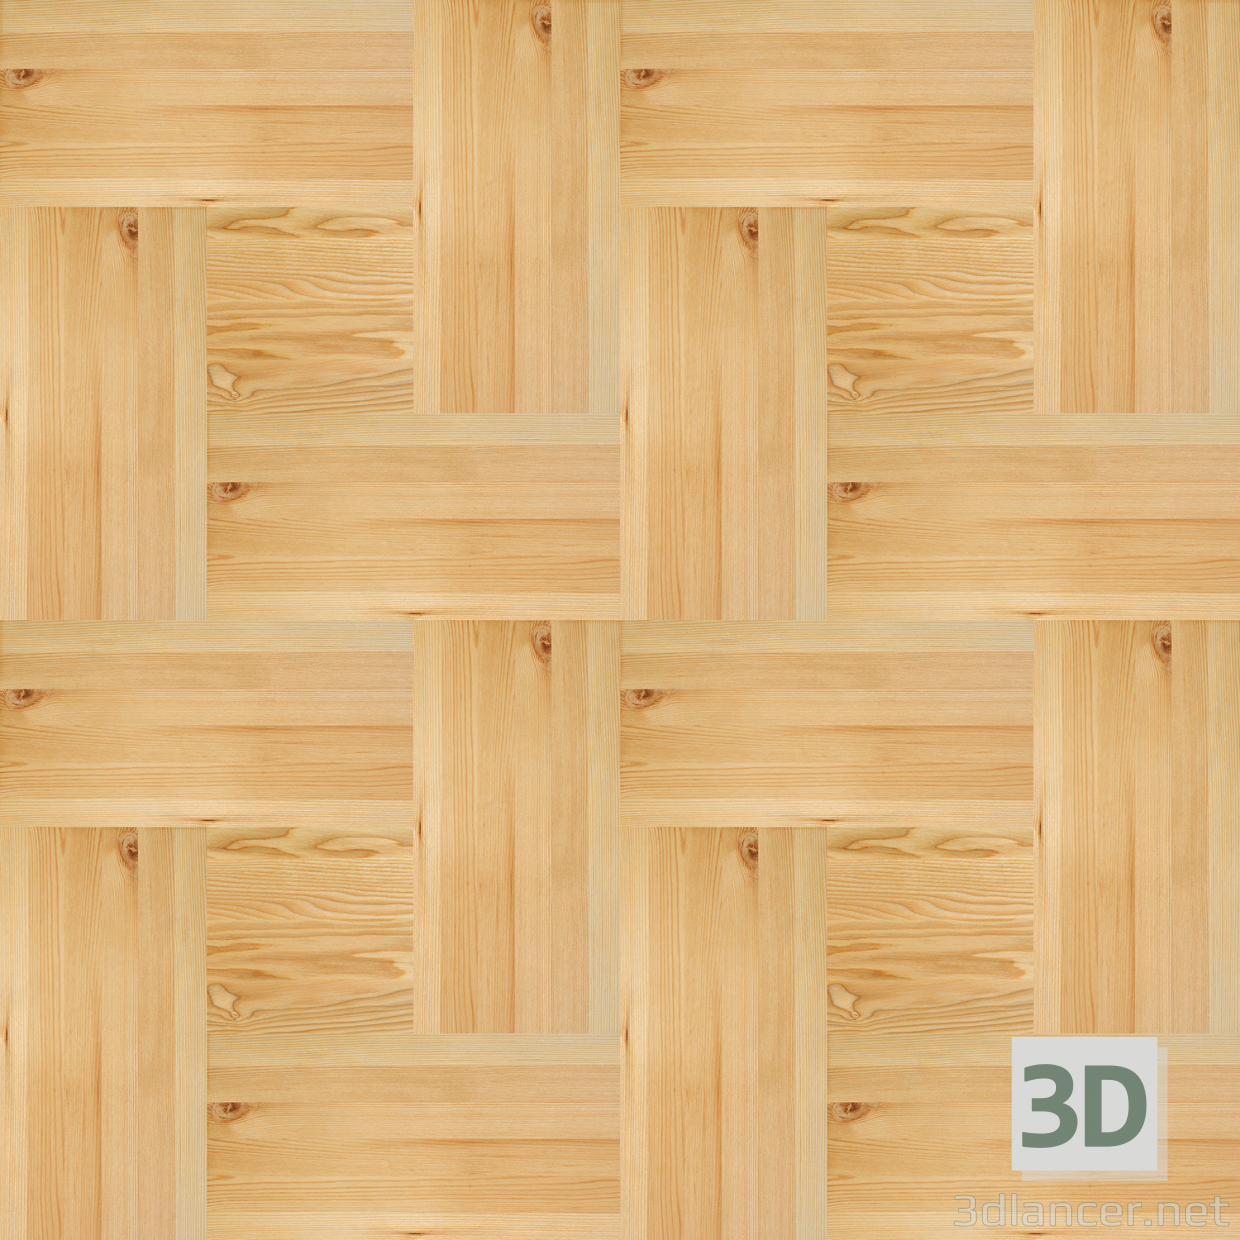 बनावट लकड़ी का मोज़ेक ।२ मुफ्त डाउनलोड - छवि